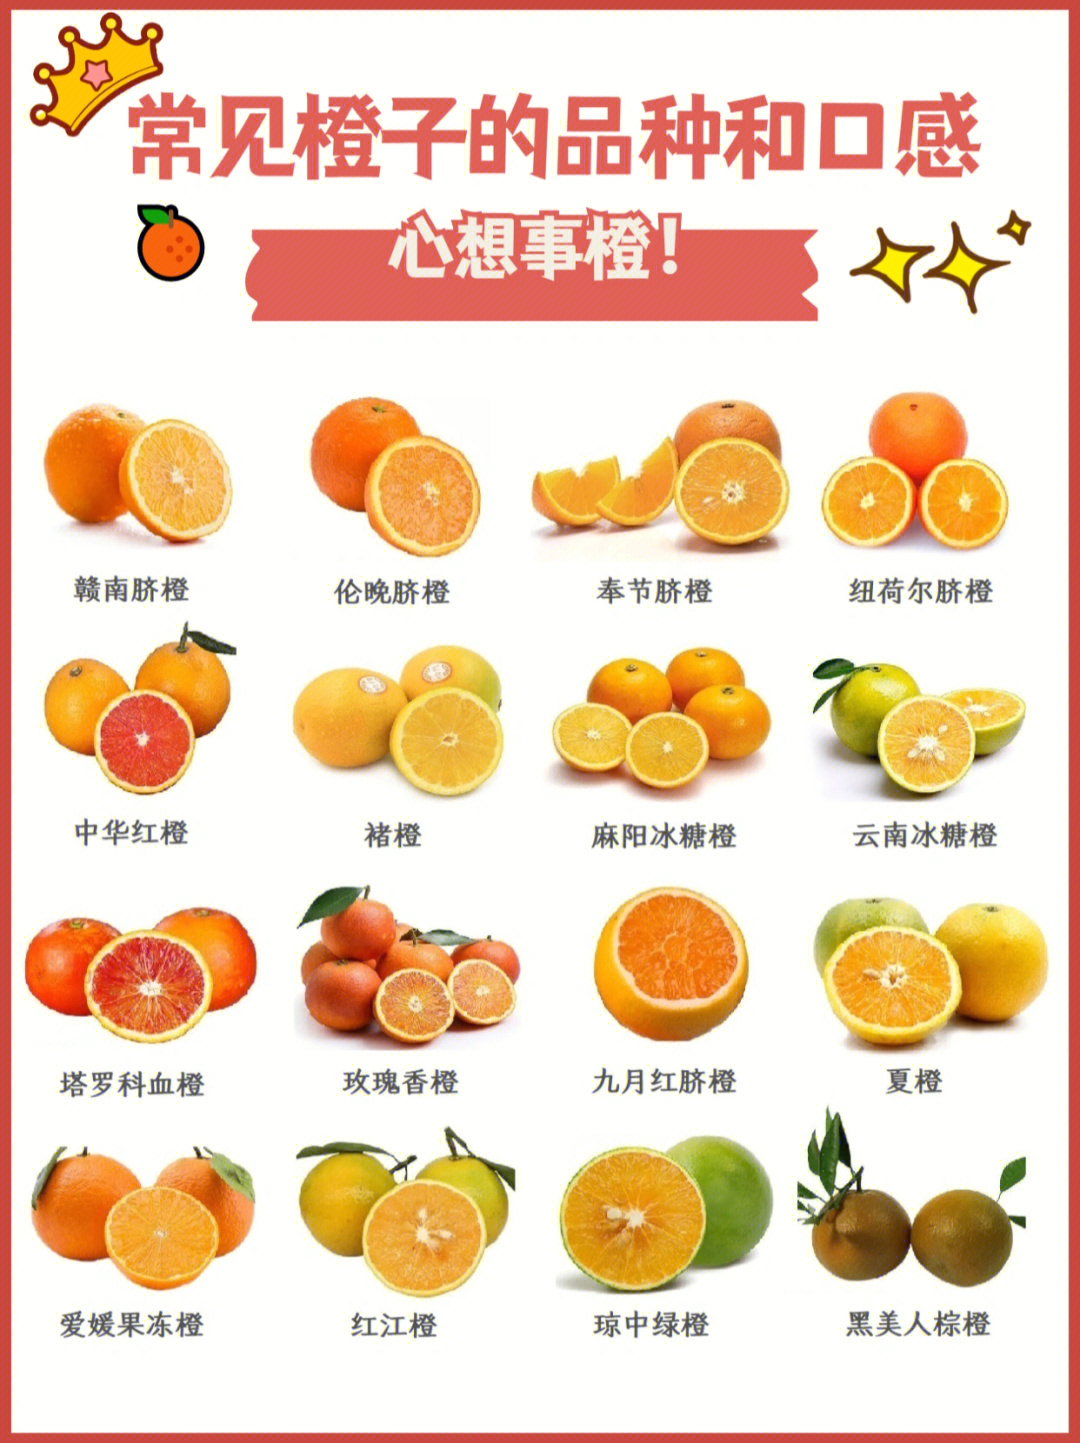 橙子性味酸凉,具有行气化痰,健脾温胃,助消化,增食欲等药用功效